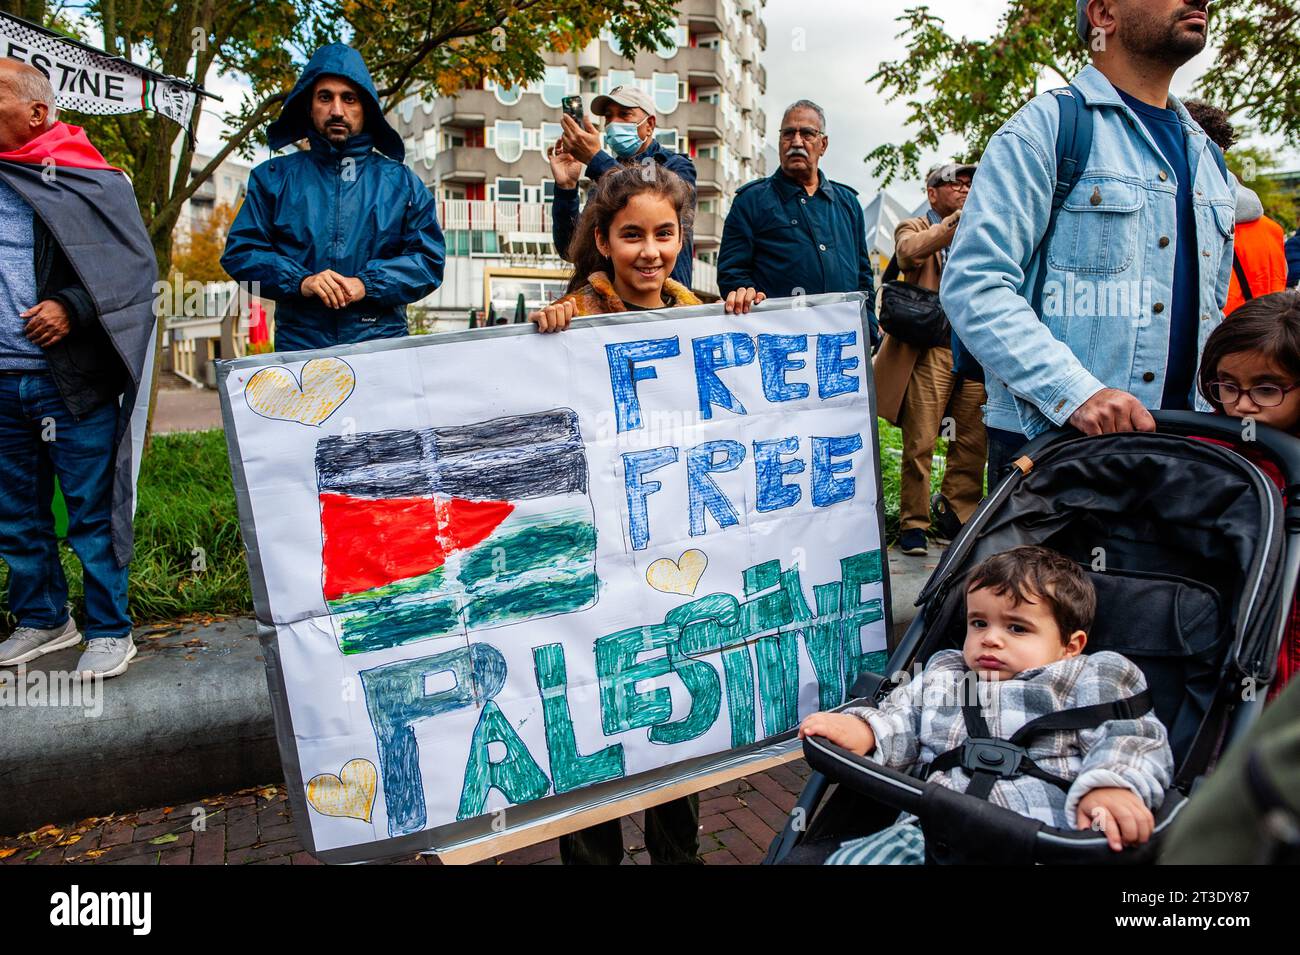 22 ottobre, Rotterdam. I palestinesi e i loro sostenitori continuano a protestare per condannare il governo di Israele ed esprimere solidarietà al popolo palestinese. Circa 5.000 manifestanti si sono riuniti in lutto, furia e solidarietà a causa della recente escalation del conflitto israelo-palestinese e degli eventi inquietanti a Gaza. Foto Stock